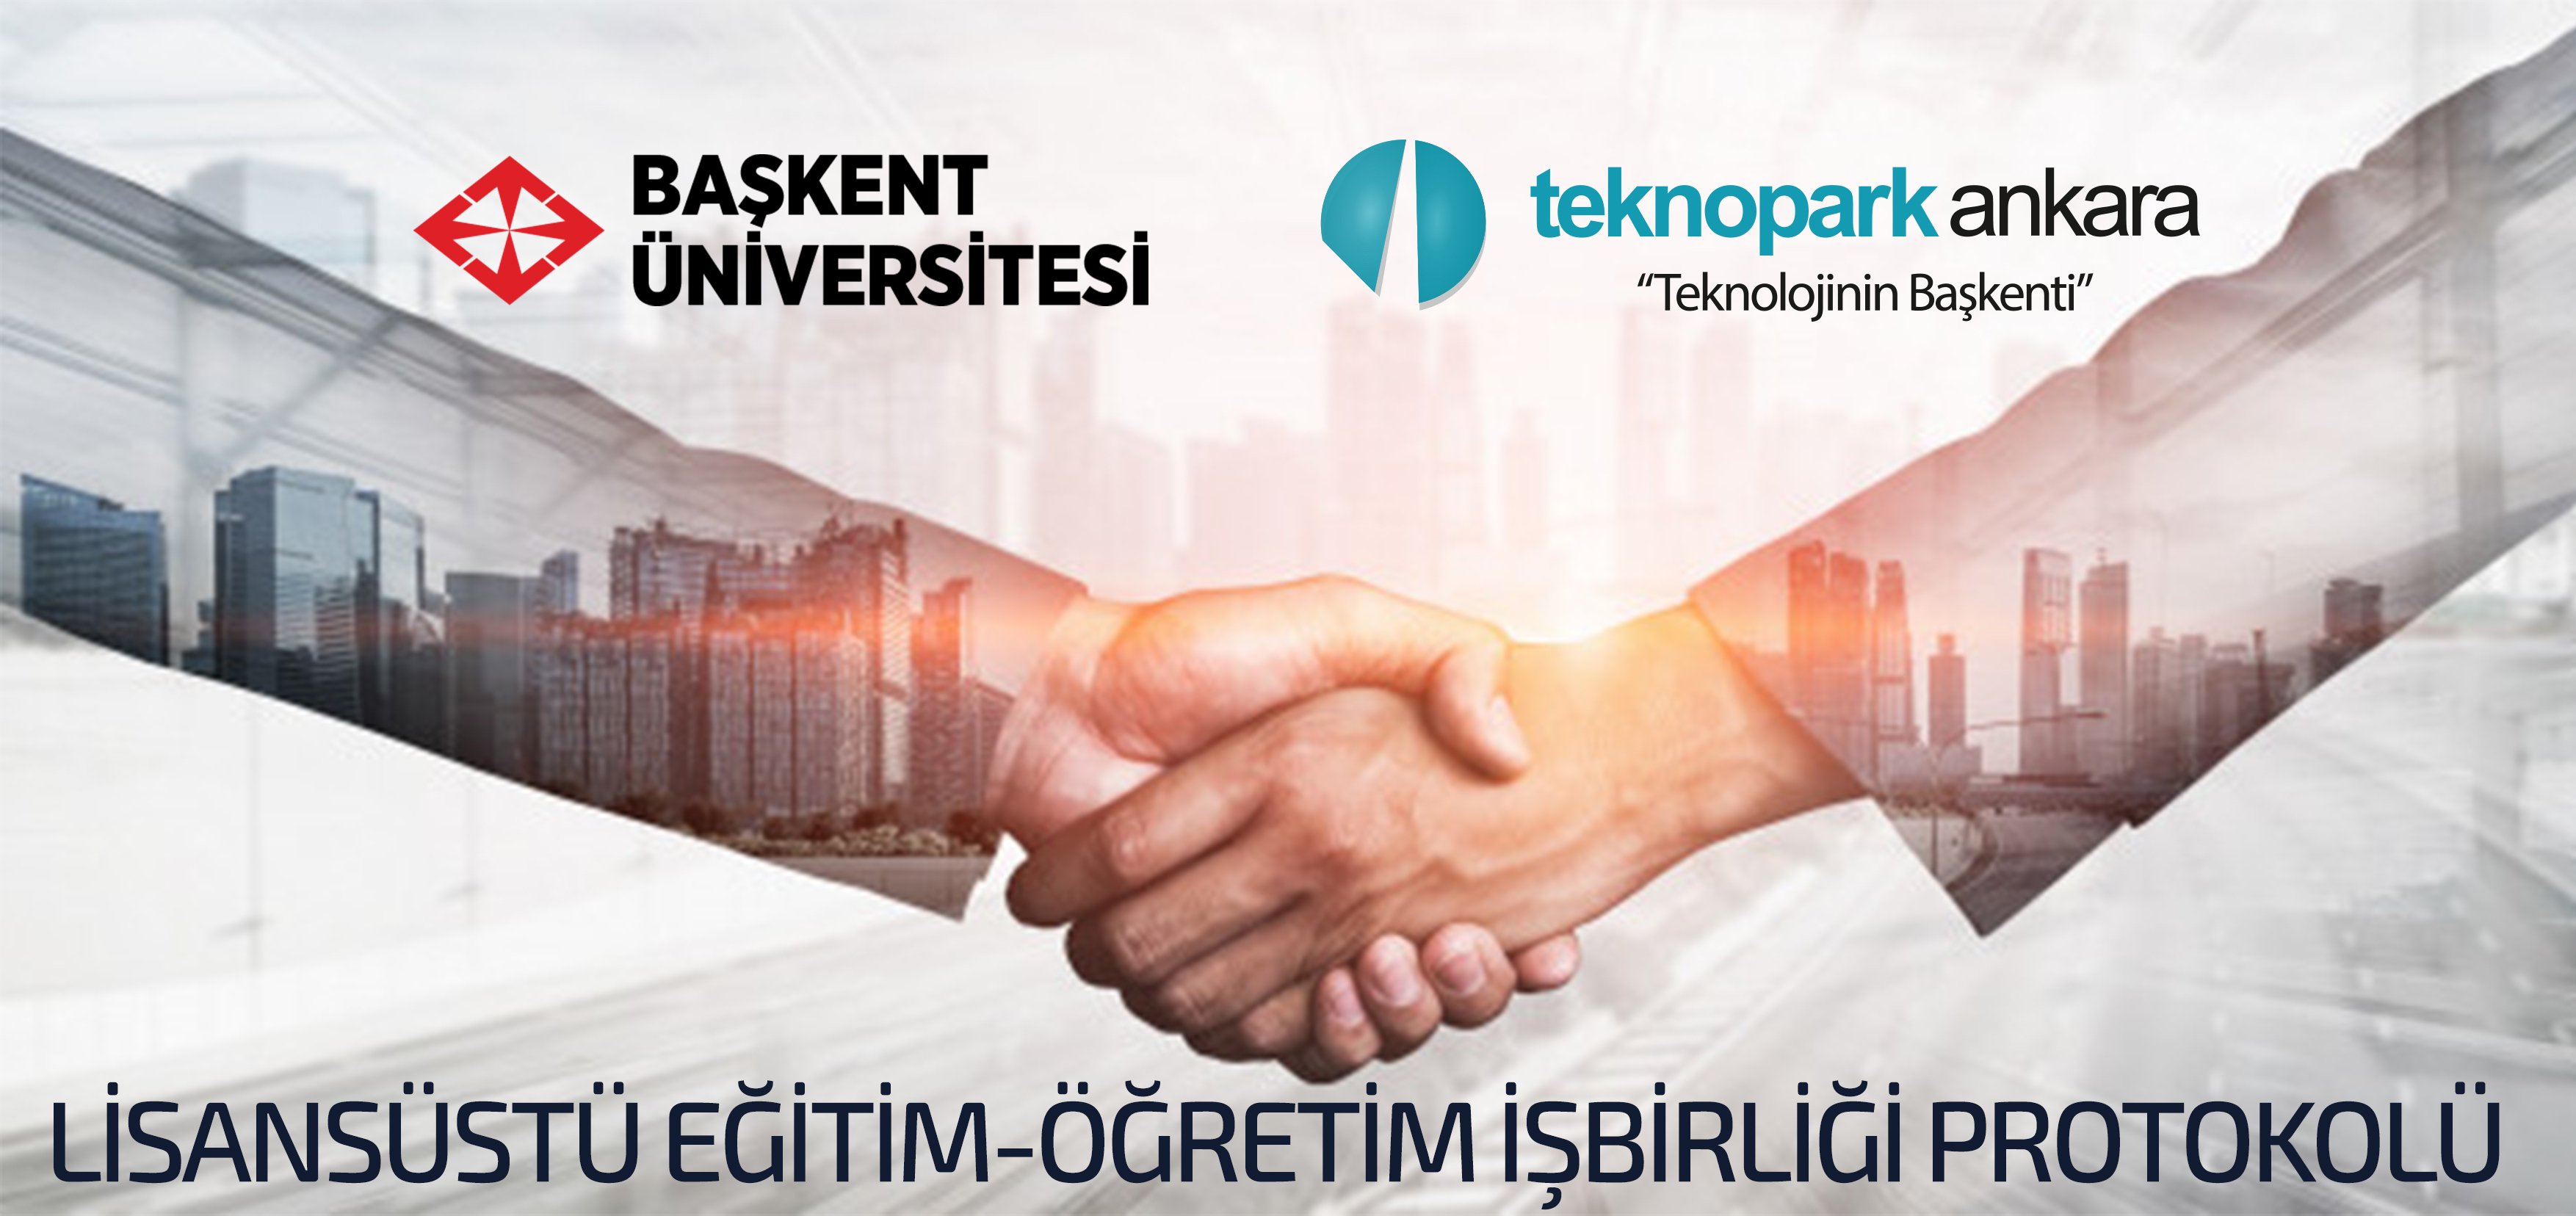 Teknopark Ankara ve Başkent Üniversitesi arasında lisansüstü eğitim konusunda iş birliği protokolü imzalandı.